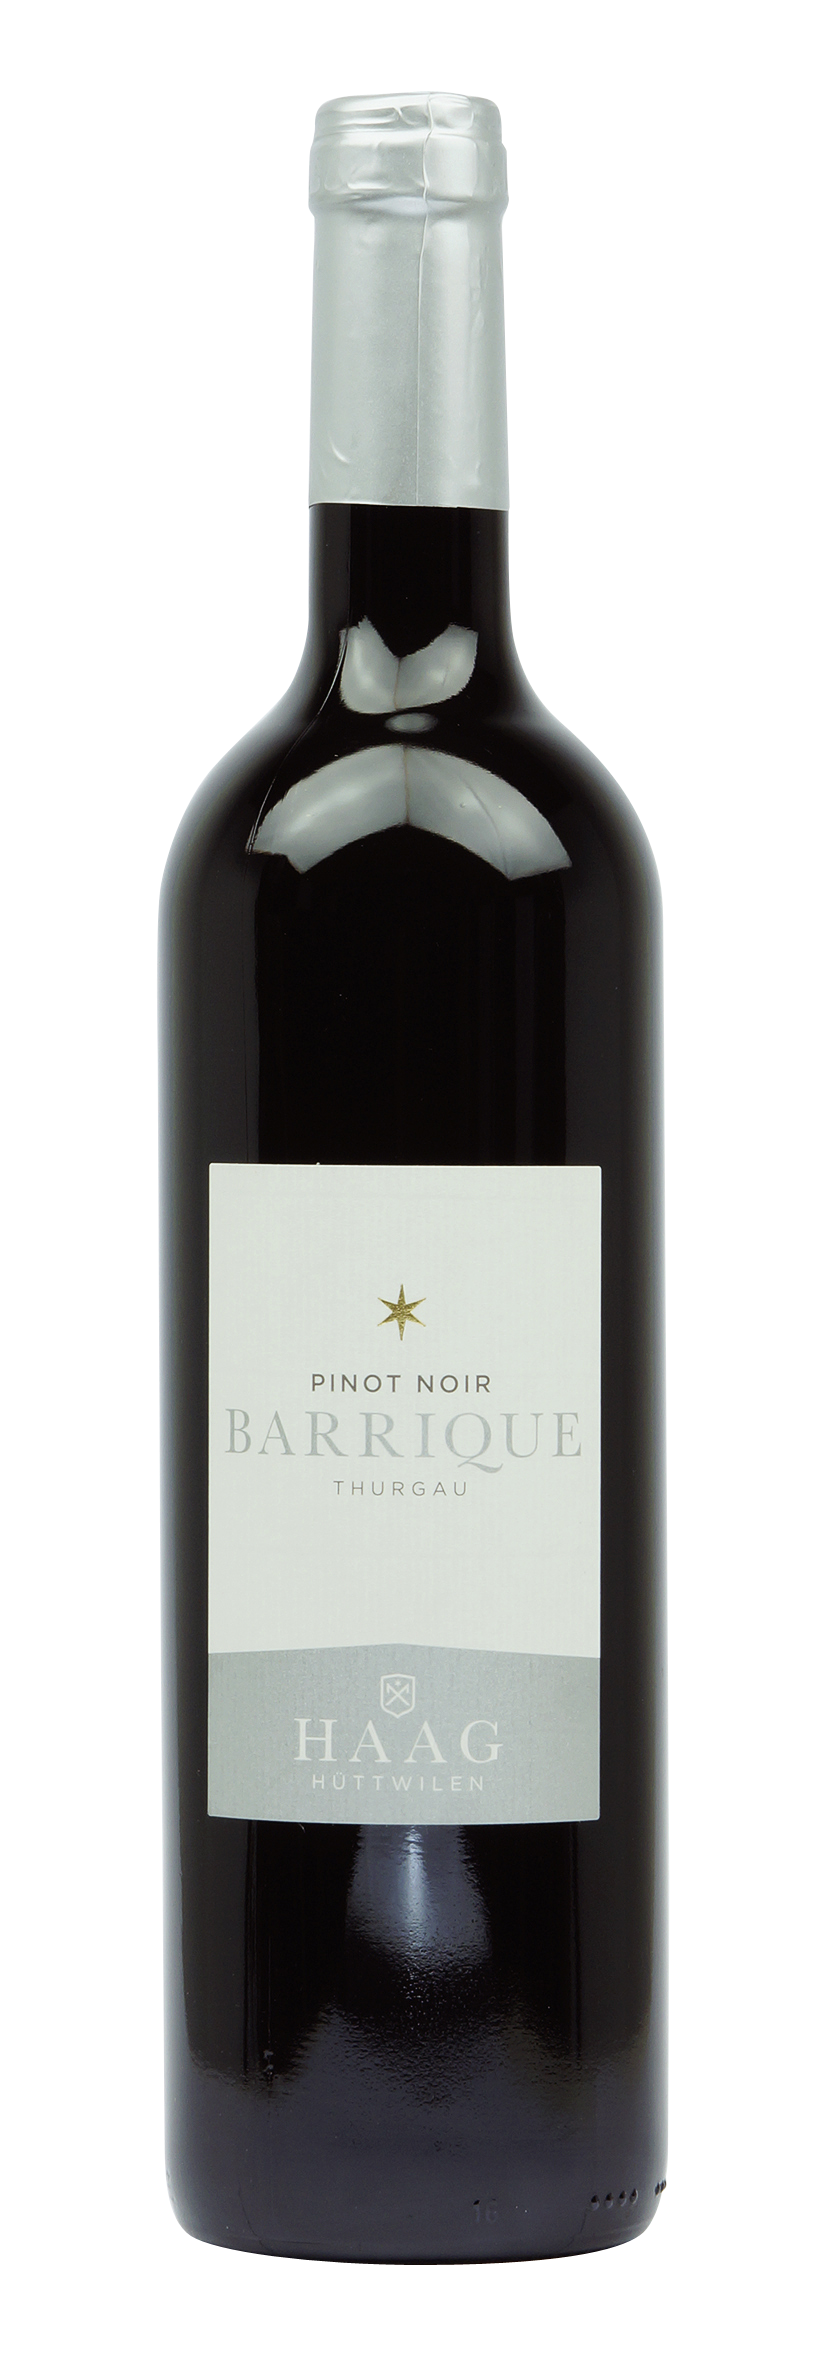 Thurgau AOC Pinot Noir Barrique 2015